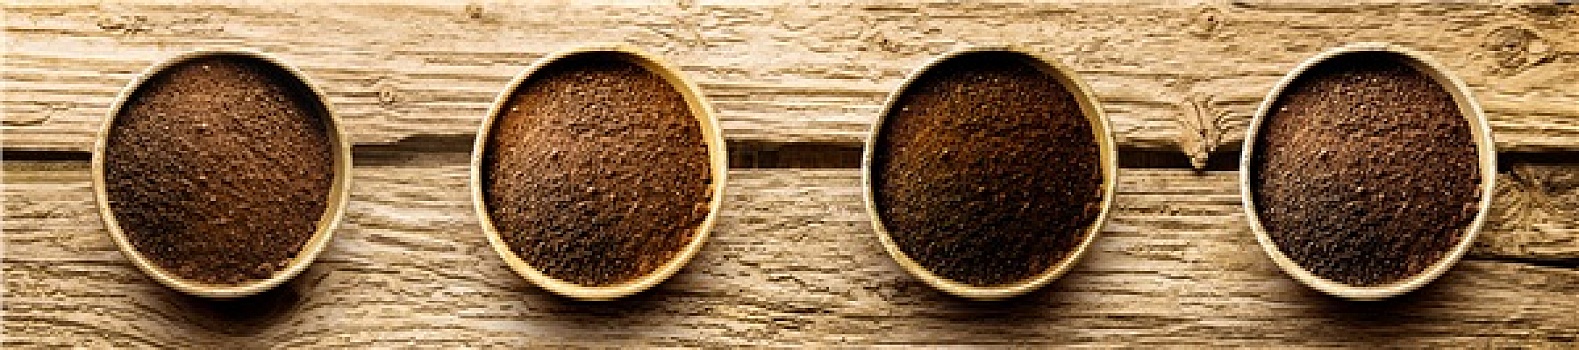 品种,新鲜,地面,咖啡粉